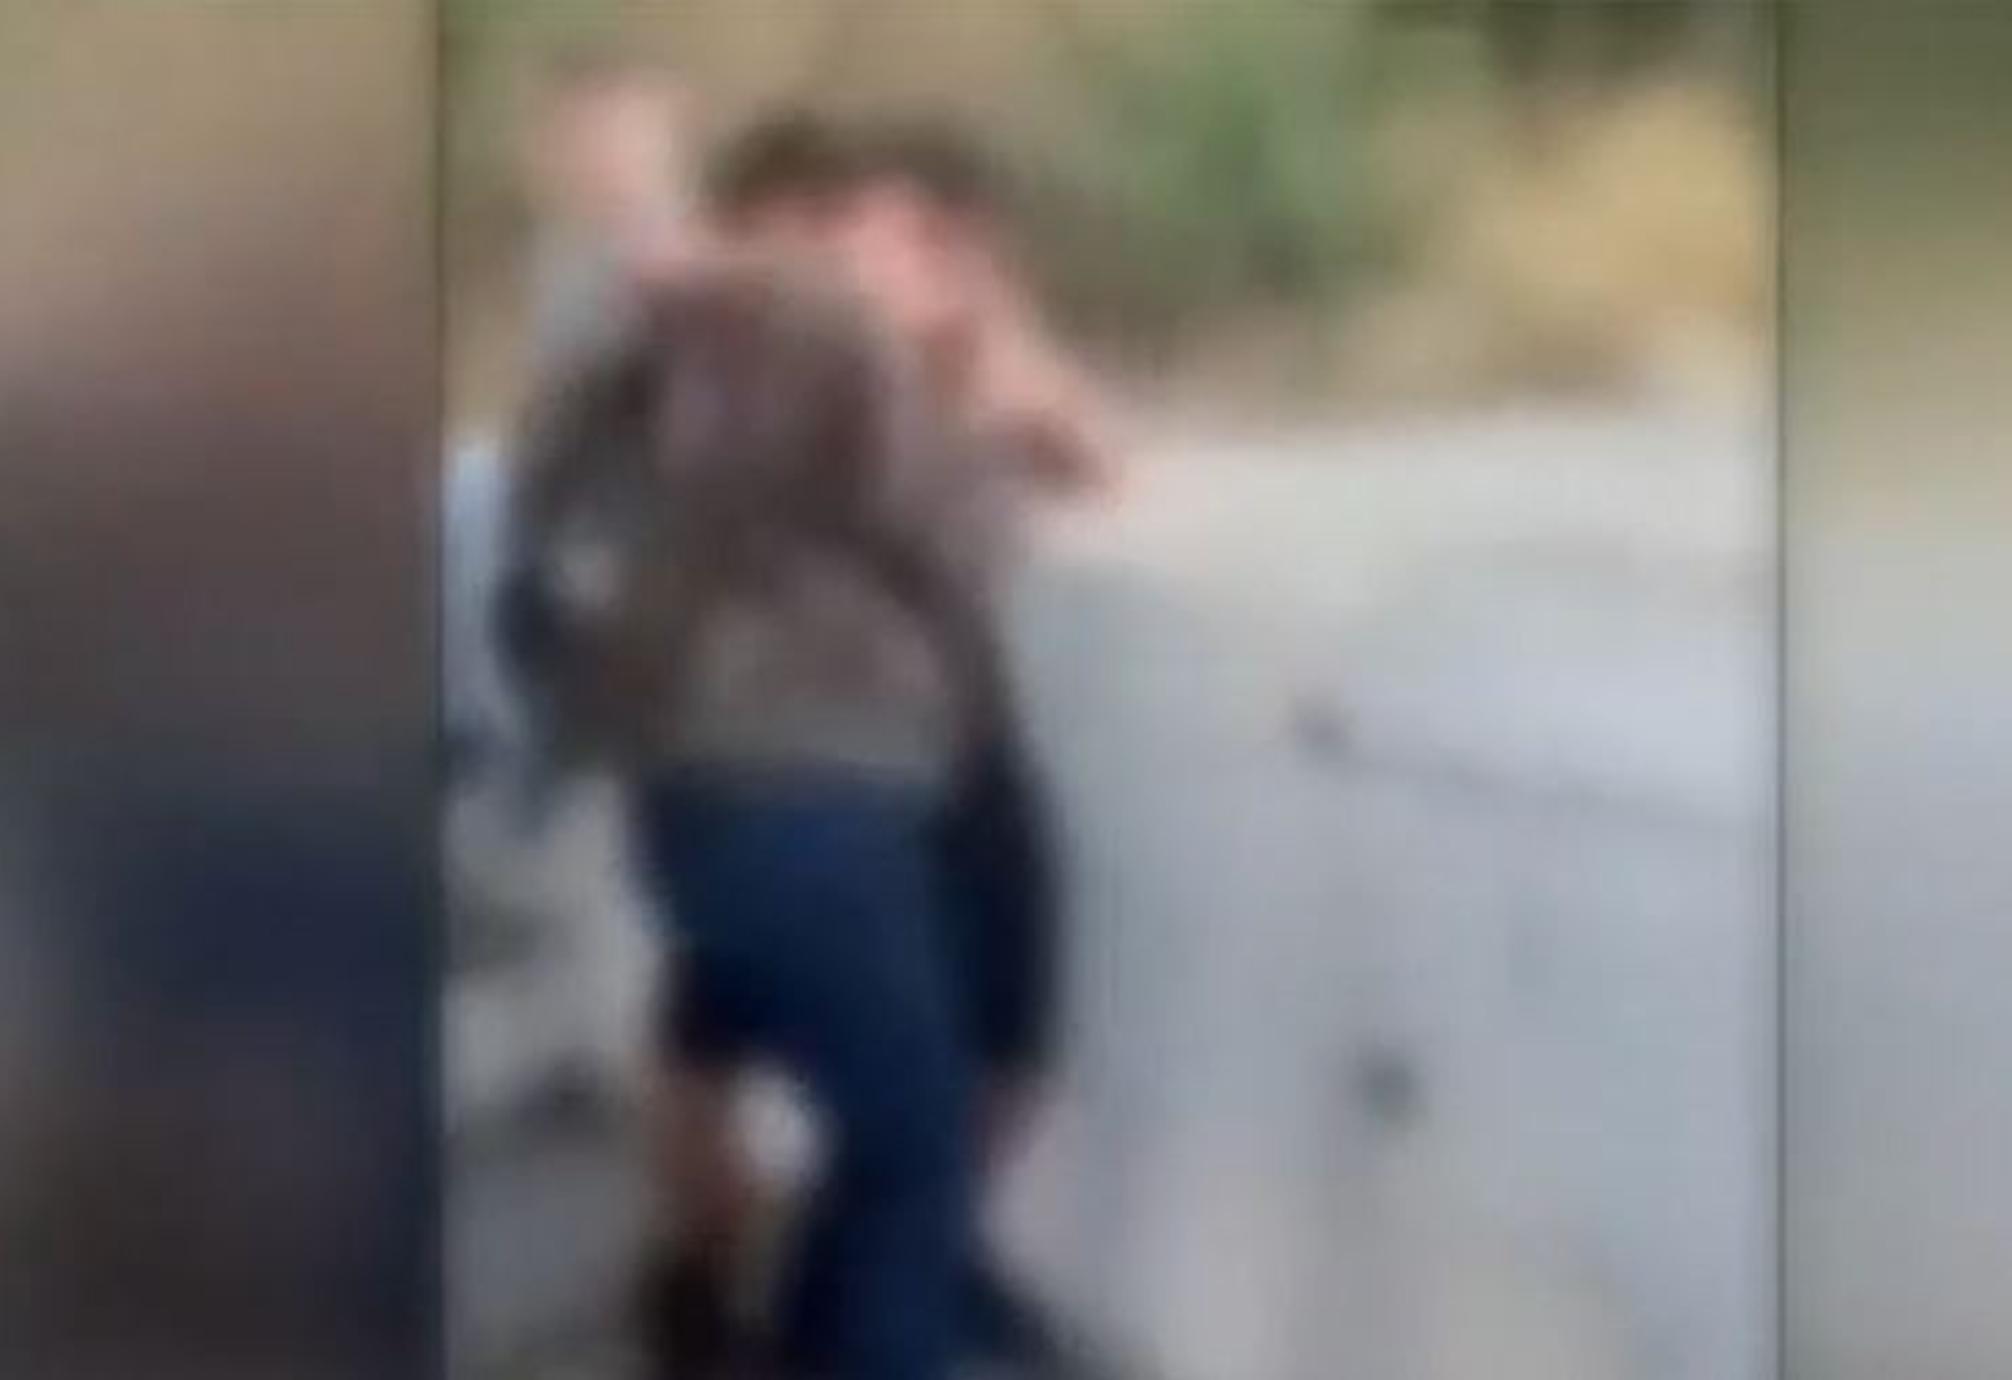 Ρέθυμνο: Σοκάρει βίντεο από άγριο ξυλοδαρμό 13χρονου μαθητή μέσα στο σχολείο – Φώναζαν σκότωσέ τον